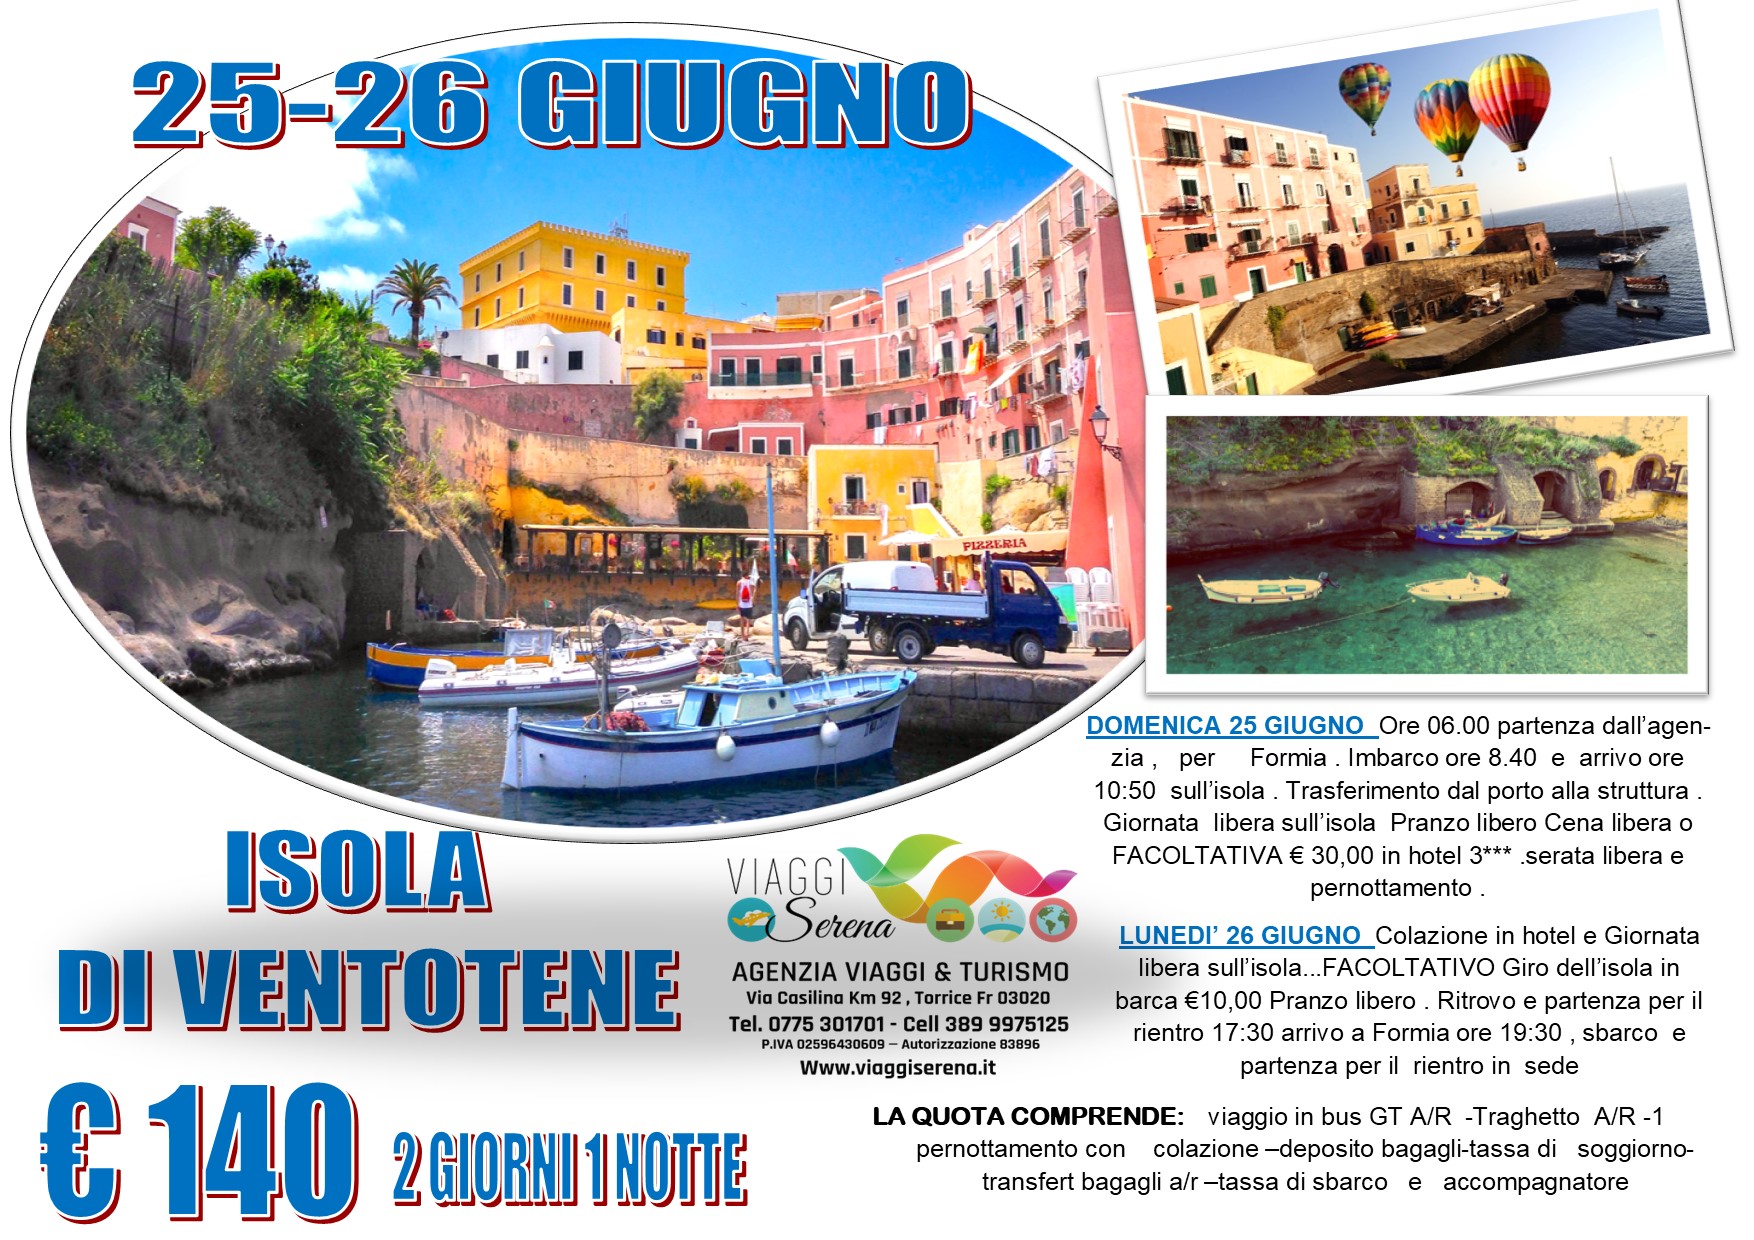 Viaggi di Gruppo: Isola di Ventotene 25-26 Giugno € 140,00